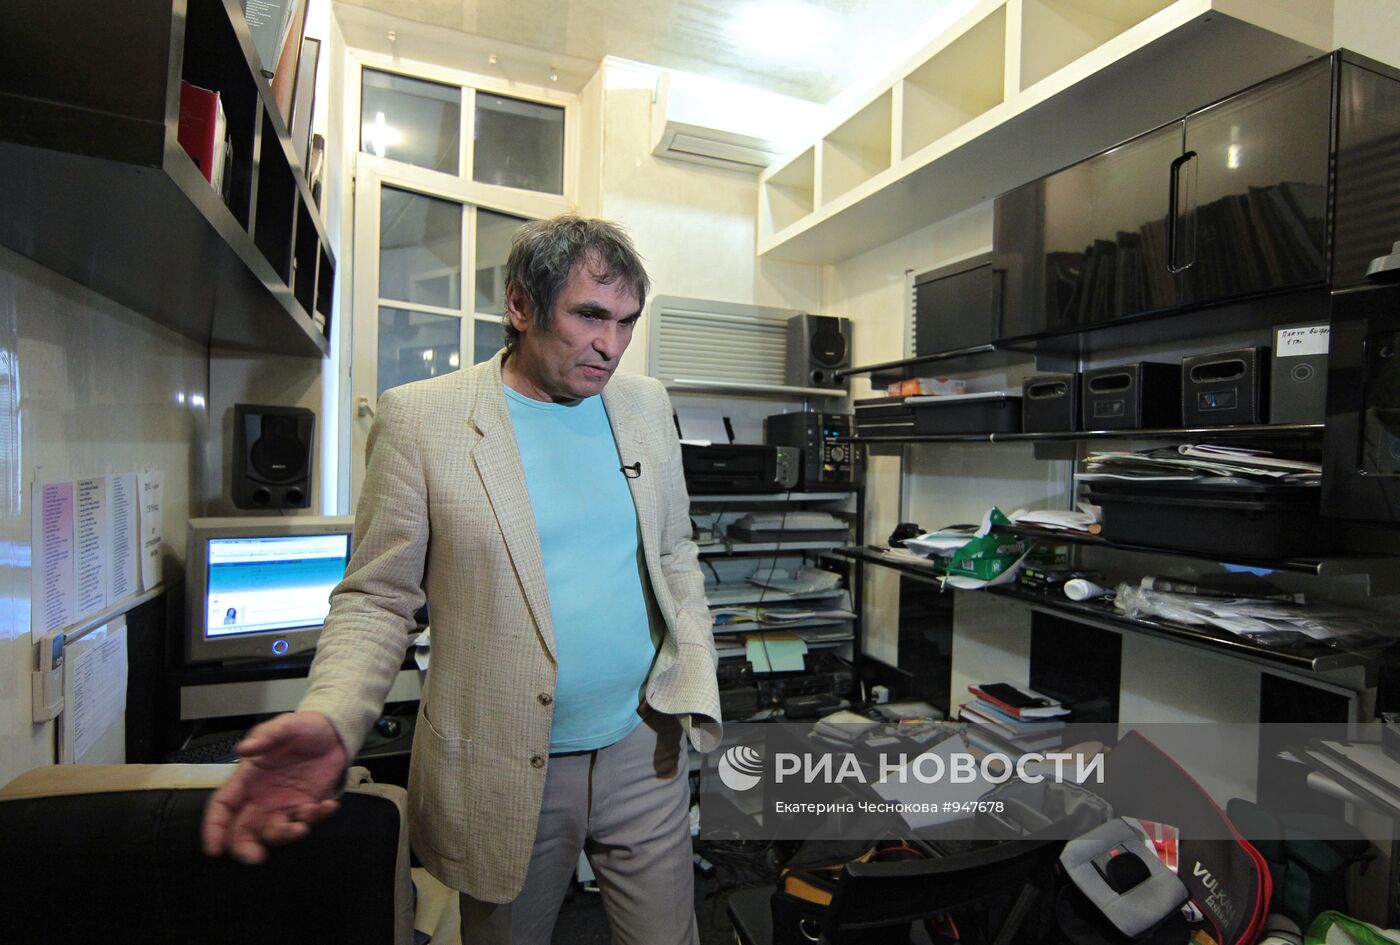 Бари Алибасов в своей квартире